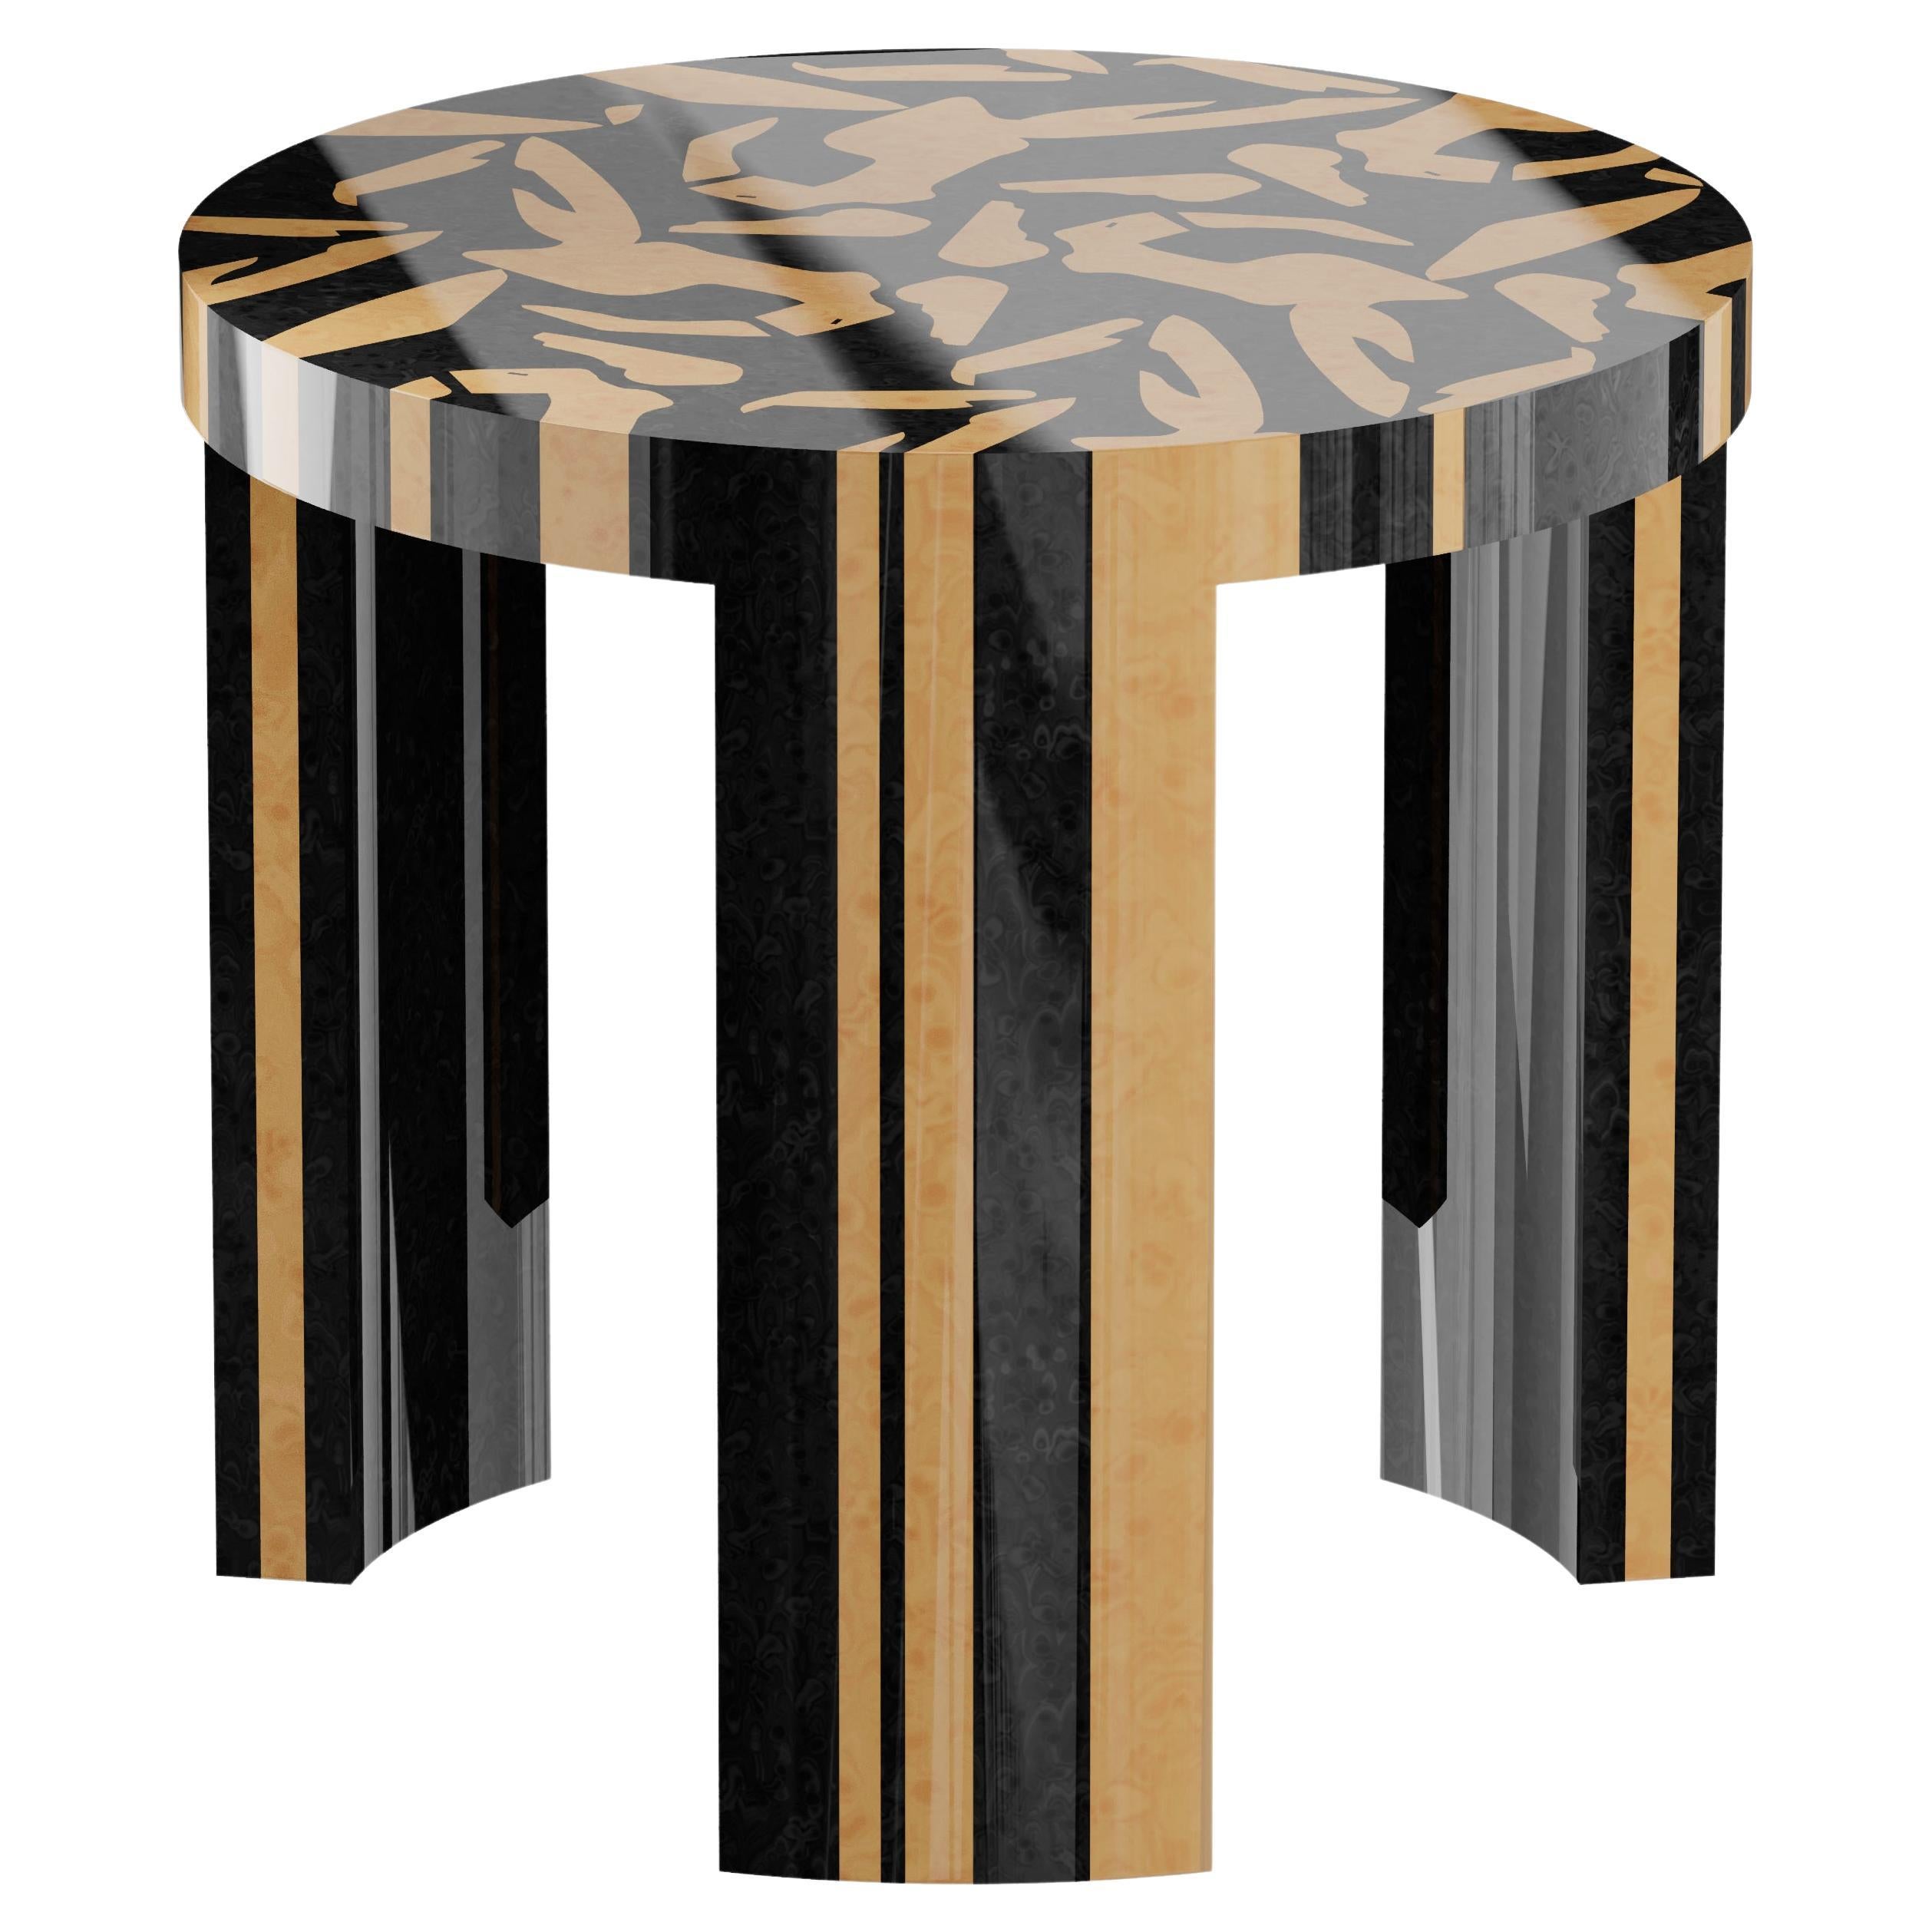 Moderner runder Beistelltisch mit abstraktem Muster aus Holz, Intarsien in Beige und Schwarz